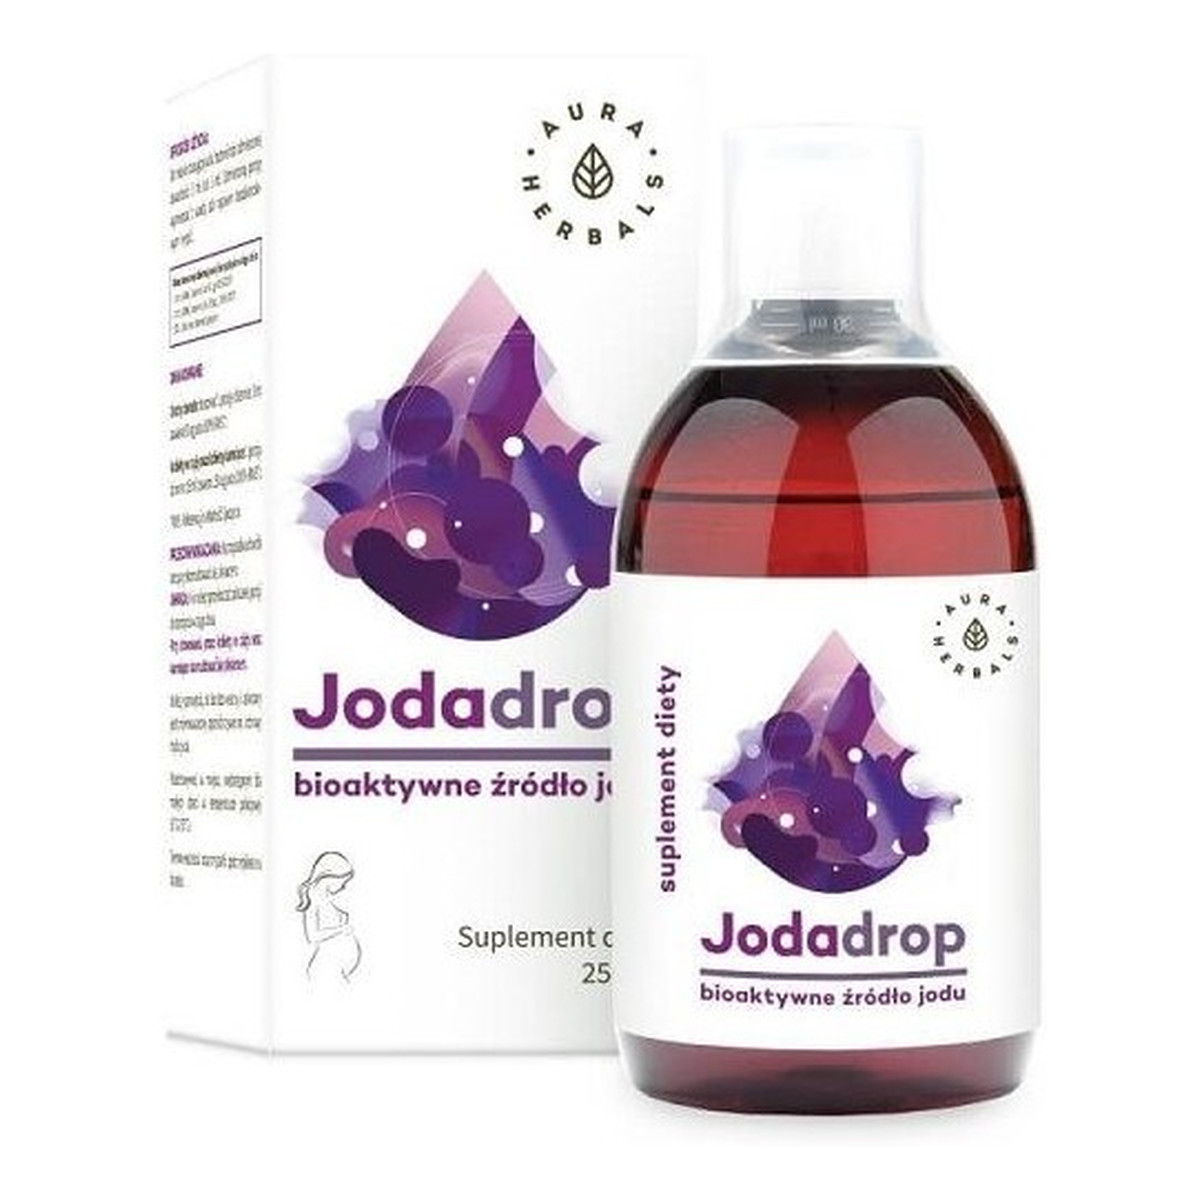 Aura Herbals Jodadrop suplement diety bioaktywne źródło jodu w płynie 250ml